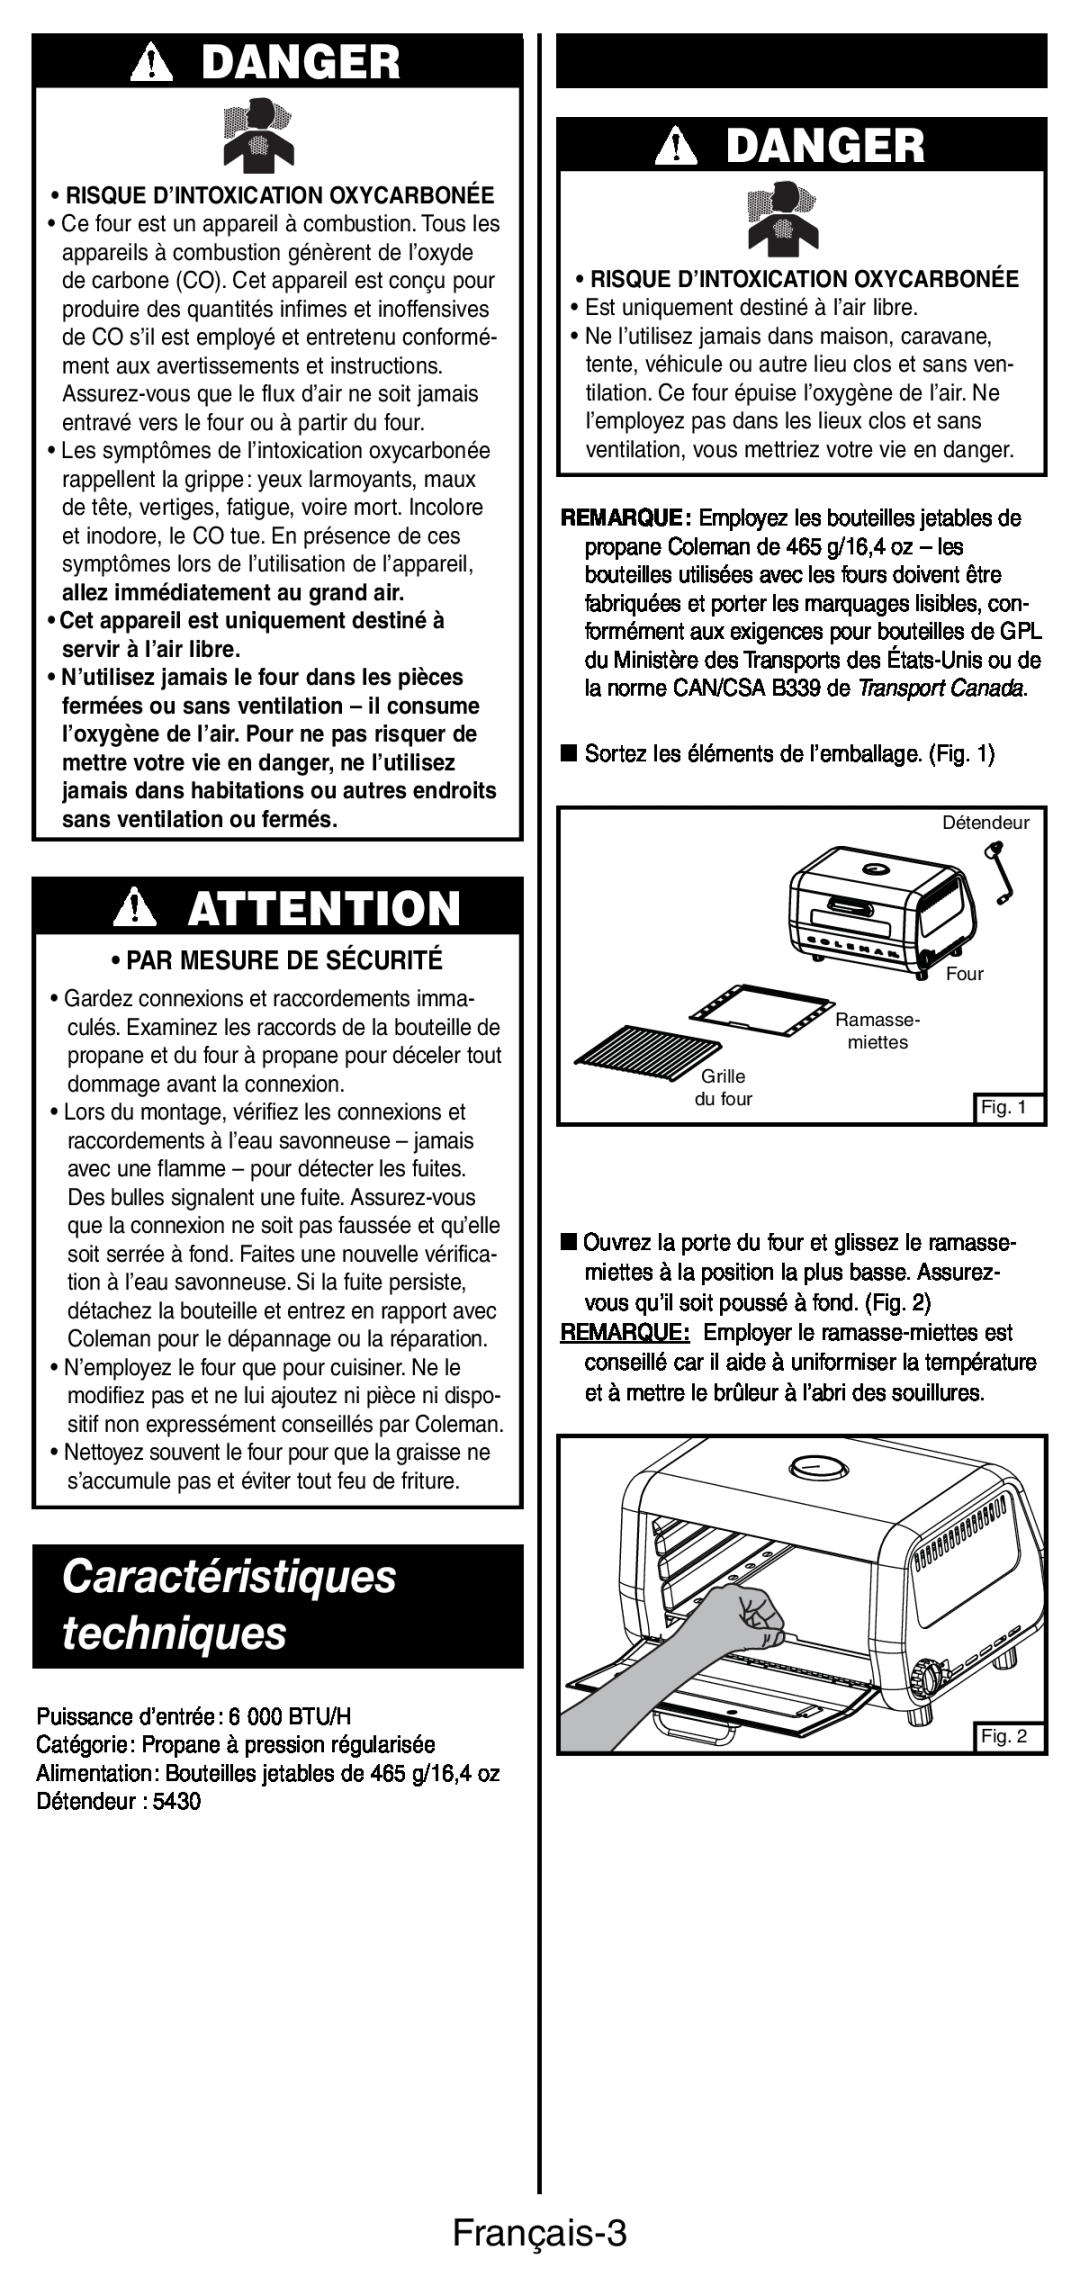 Coleman 9927 manual Danger, Mise en place, Caractéristiques techniques, Français-3, •Par Mesure De Sécurité 